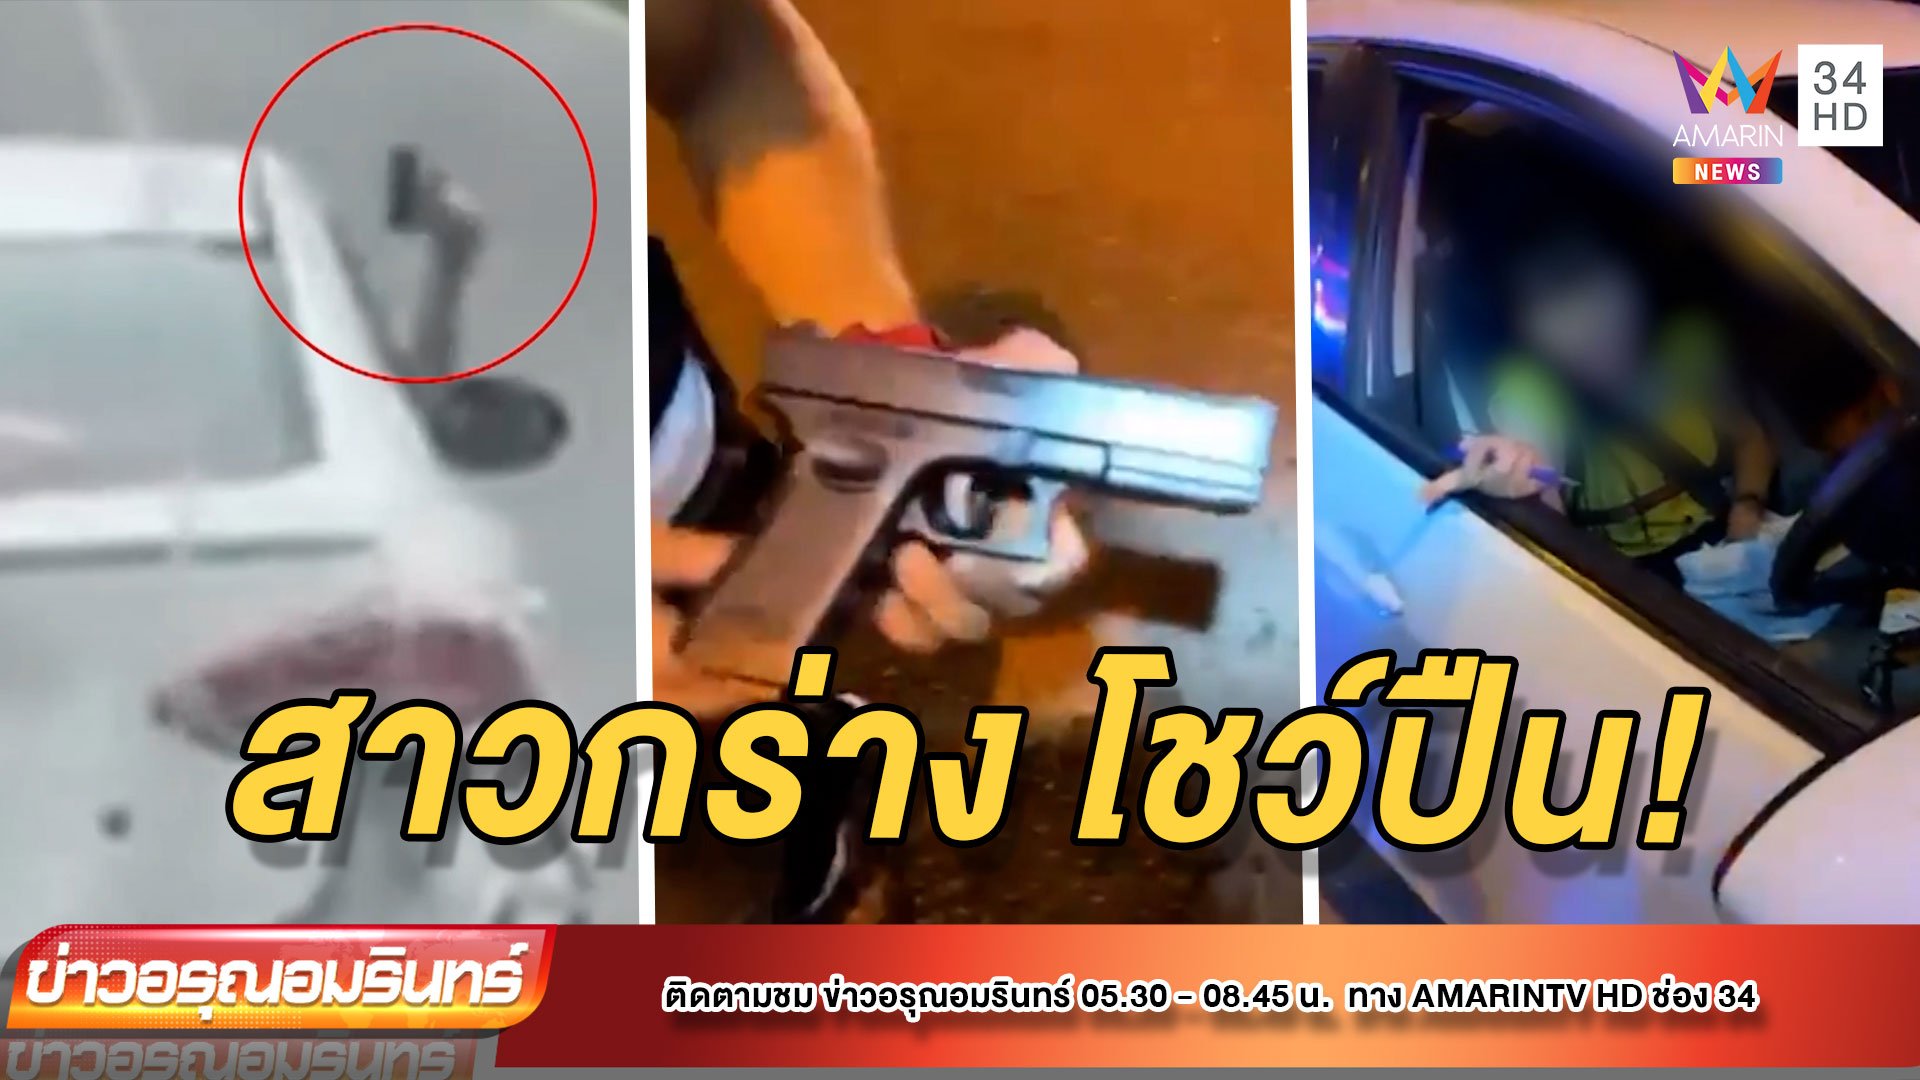 สาวกร่าง! ขับเก๋งโชว์ปืนปลอม อ้างเมียตำรวจ | ข่าวอรุณอมรินทร์ | 17 พ.ย. 64 | AMARIN TVHD34